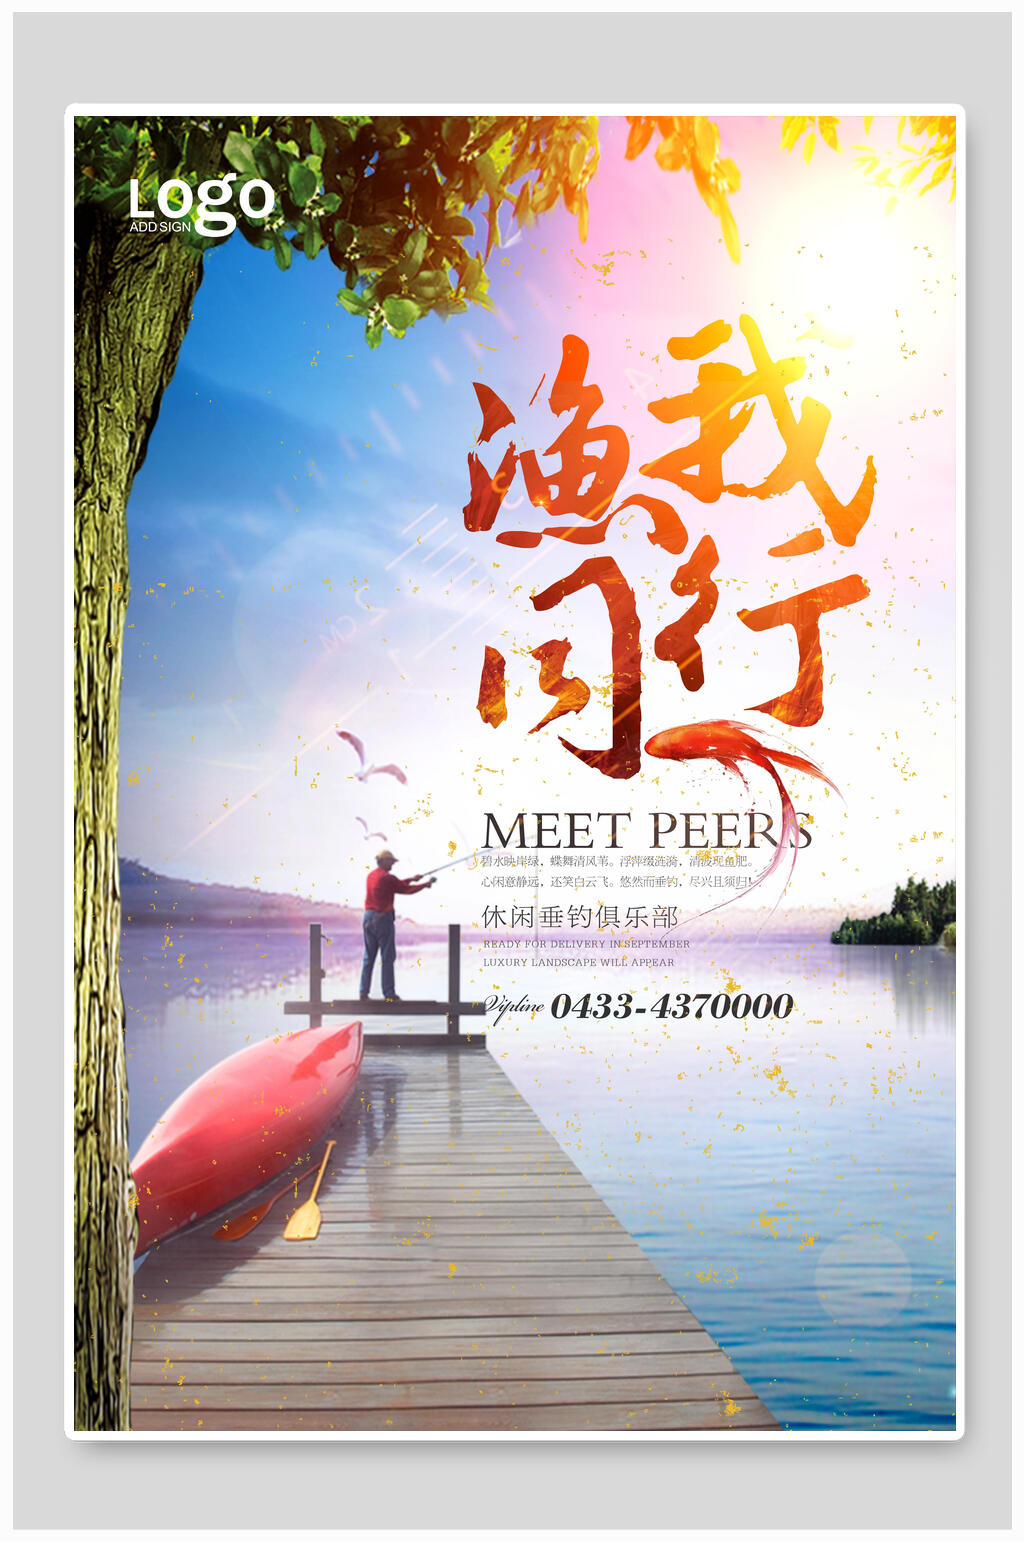 钓鱼海报展板素材免费下载,本作品是由刘丫上传的原创平面广告素材